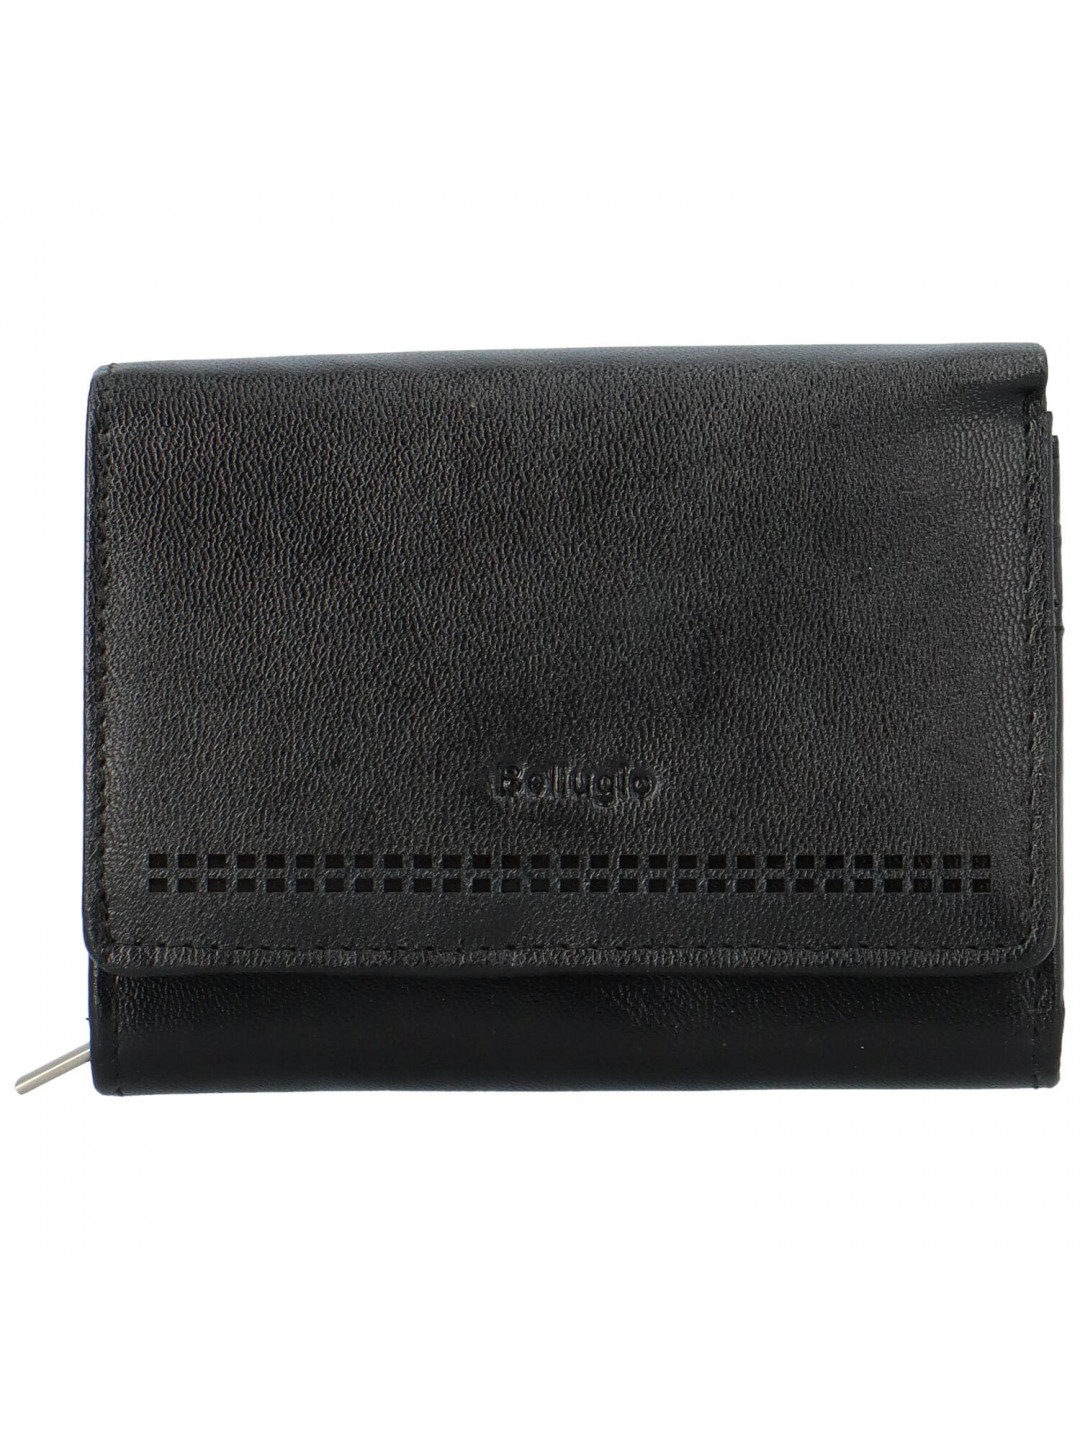 Dámská kožená peněženka černá – Bellugio Glorgia